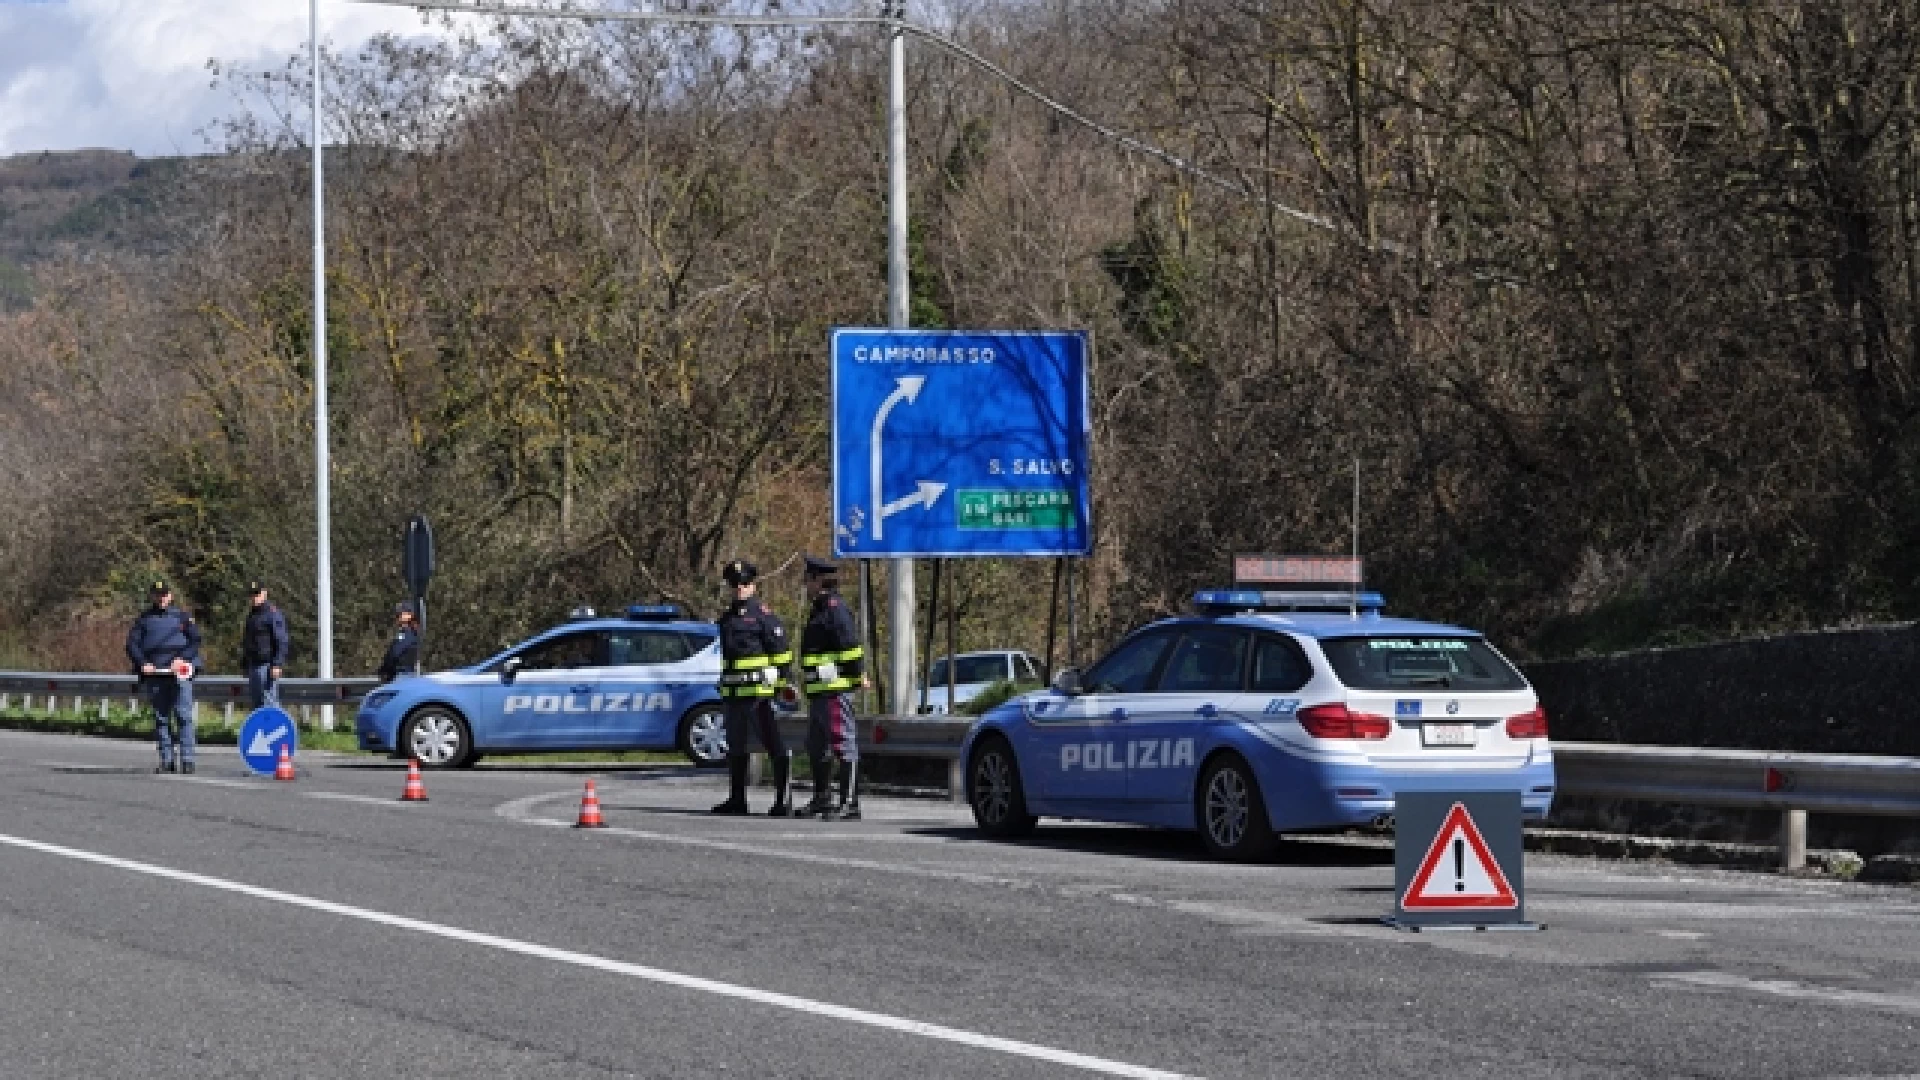 Cantalupo nel Sannio: Polizia Municipale e Polizia Stradale di Isernia collaborano nel controllo degli automobilisti.